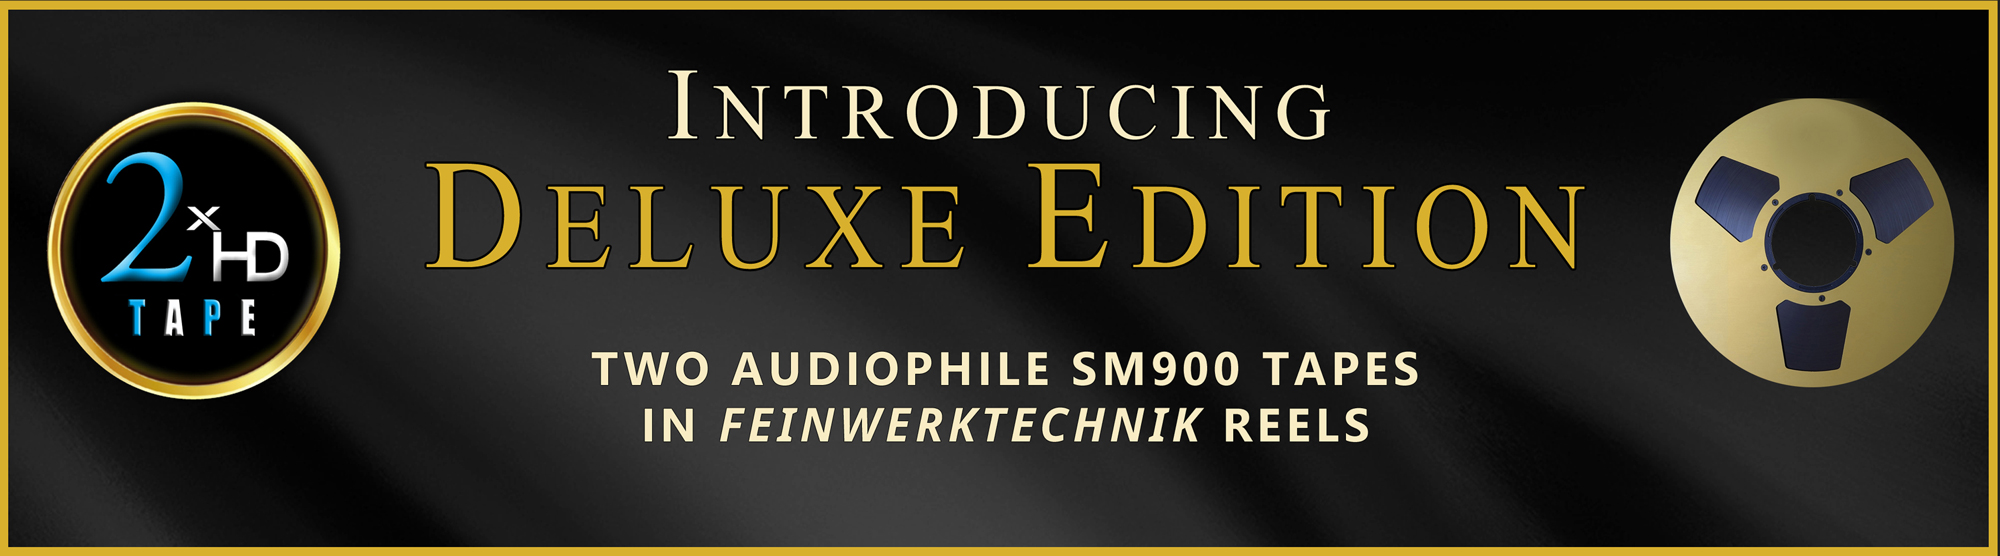 introducing deluxe edition two audiophile in feinwerktechnik reels